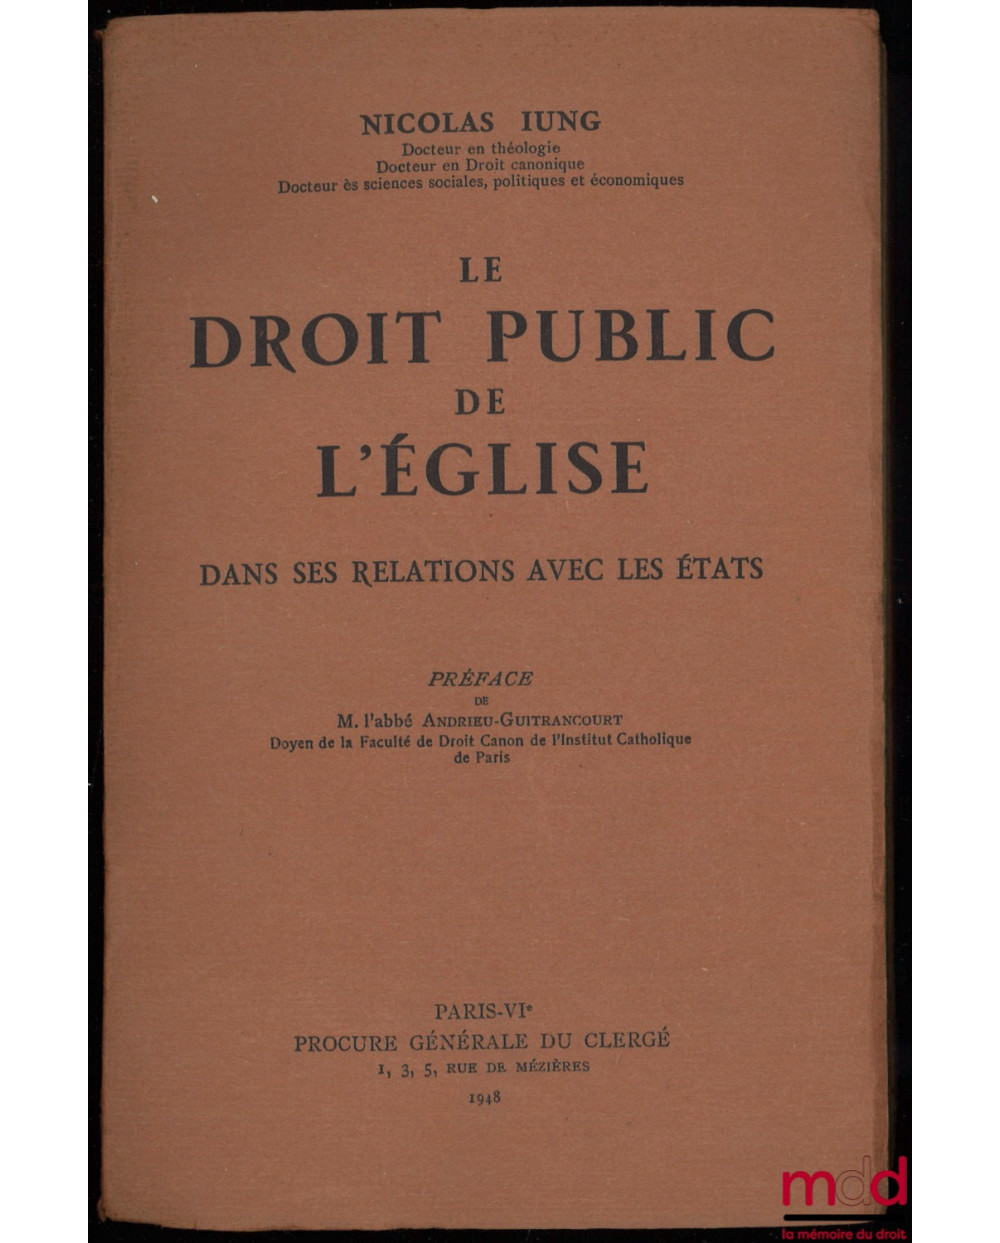 LE DROIT PUBLIC DE L’ÉGLISE DANS SES RELATIONS AVEC LES ÉTATS, préface de M. l’abbé Andrieu-Guitrancourt